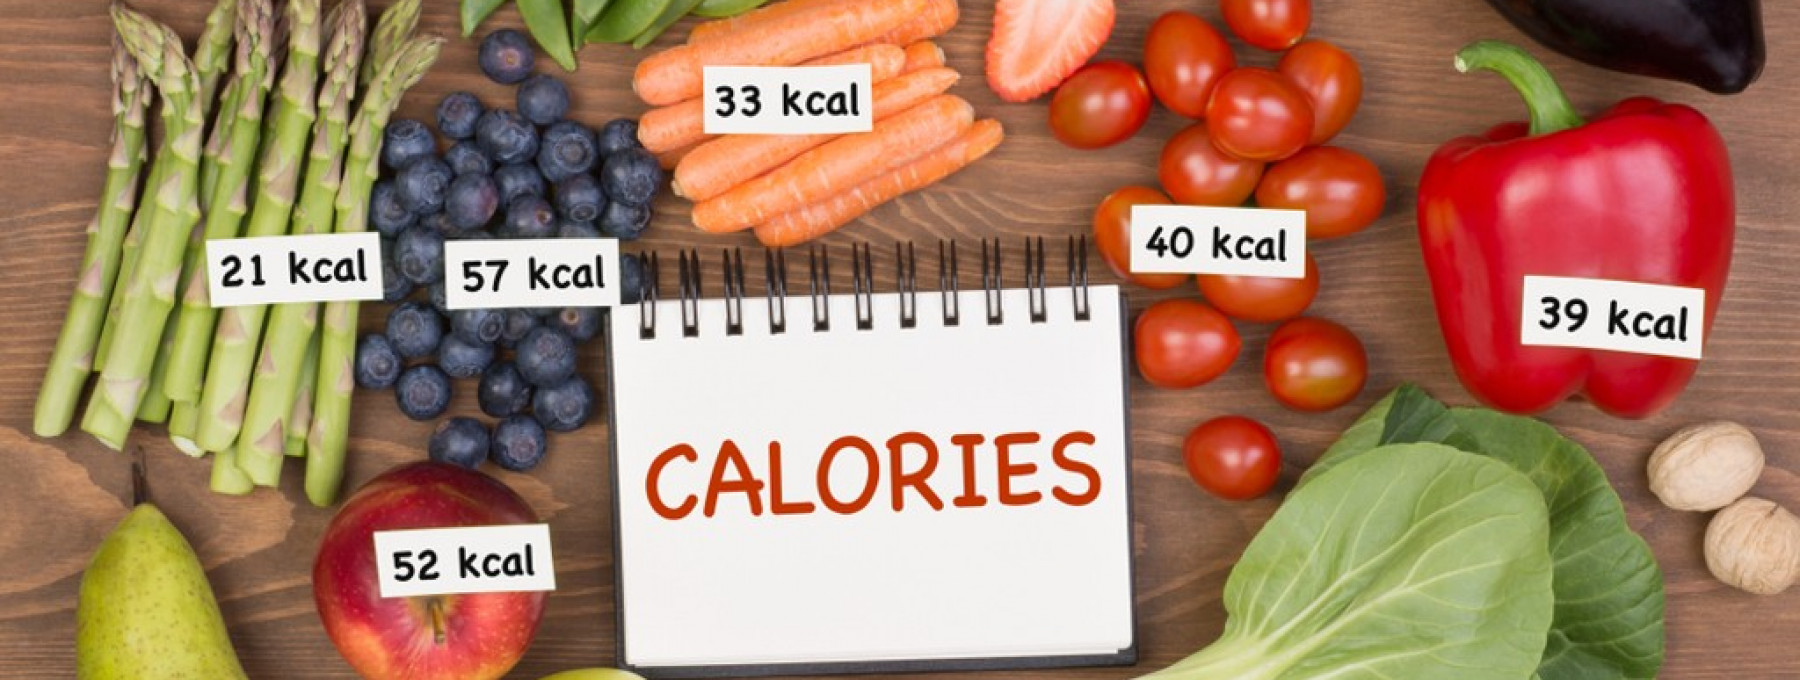 Výpočet příjmu kalorií